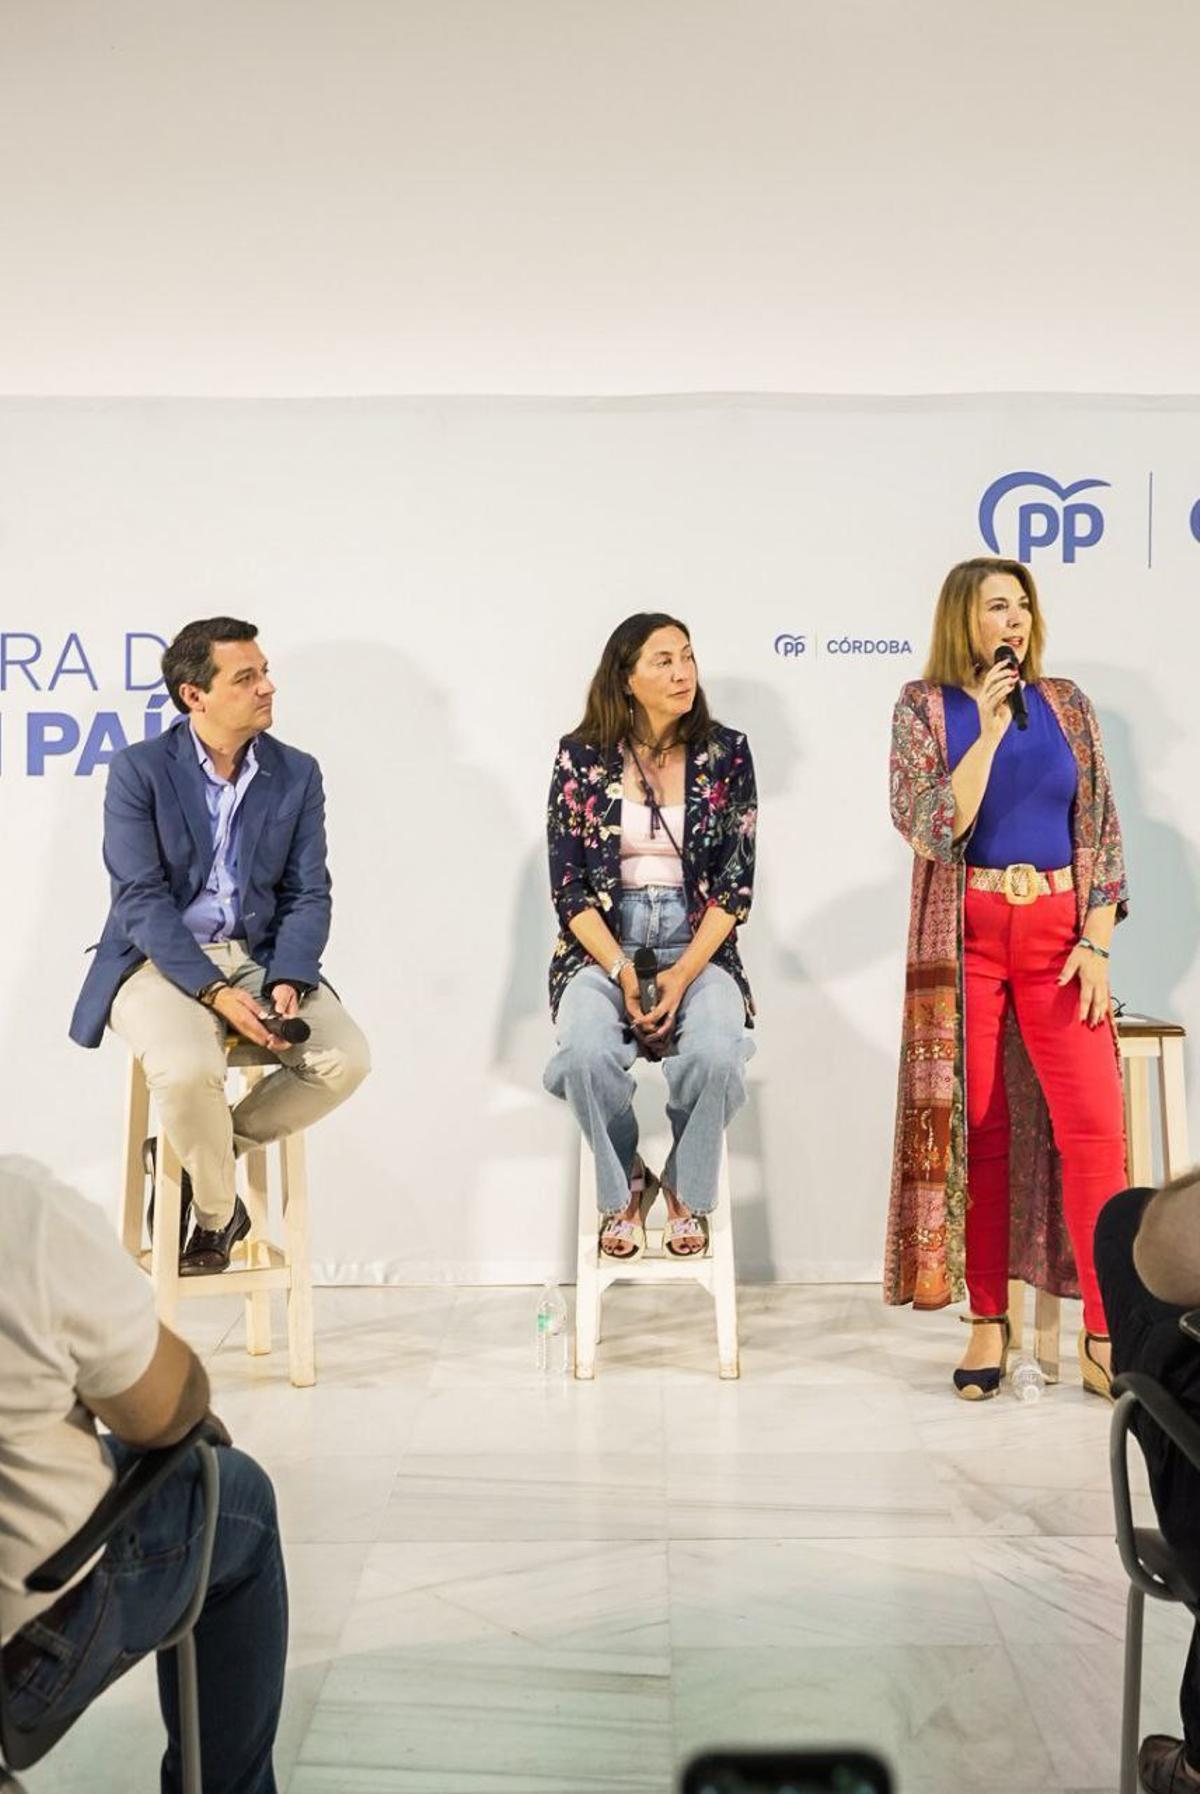 El candidato popular a la Alcaldía participa en un Foro de Innovación Social junto a la presidenta del comité electoral del PP de Andalucía, Loles López y la responsable de Política Social del PP de Córdoba, Eva Contador.